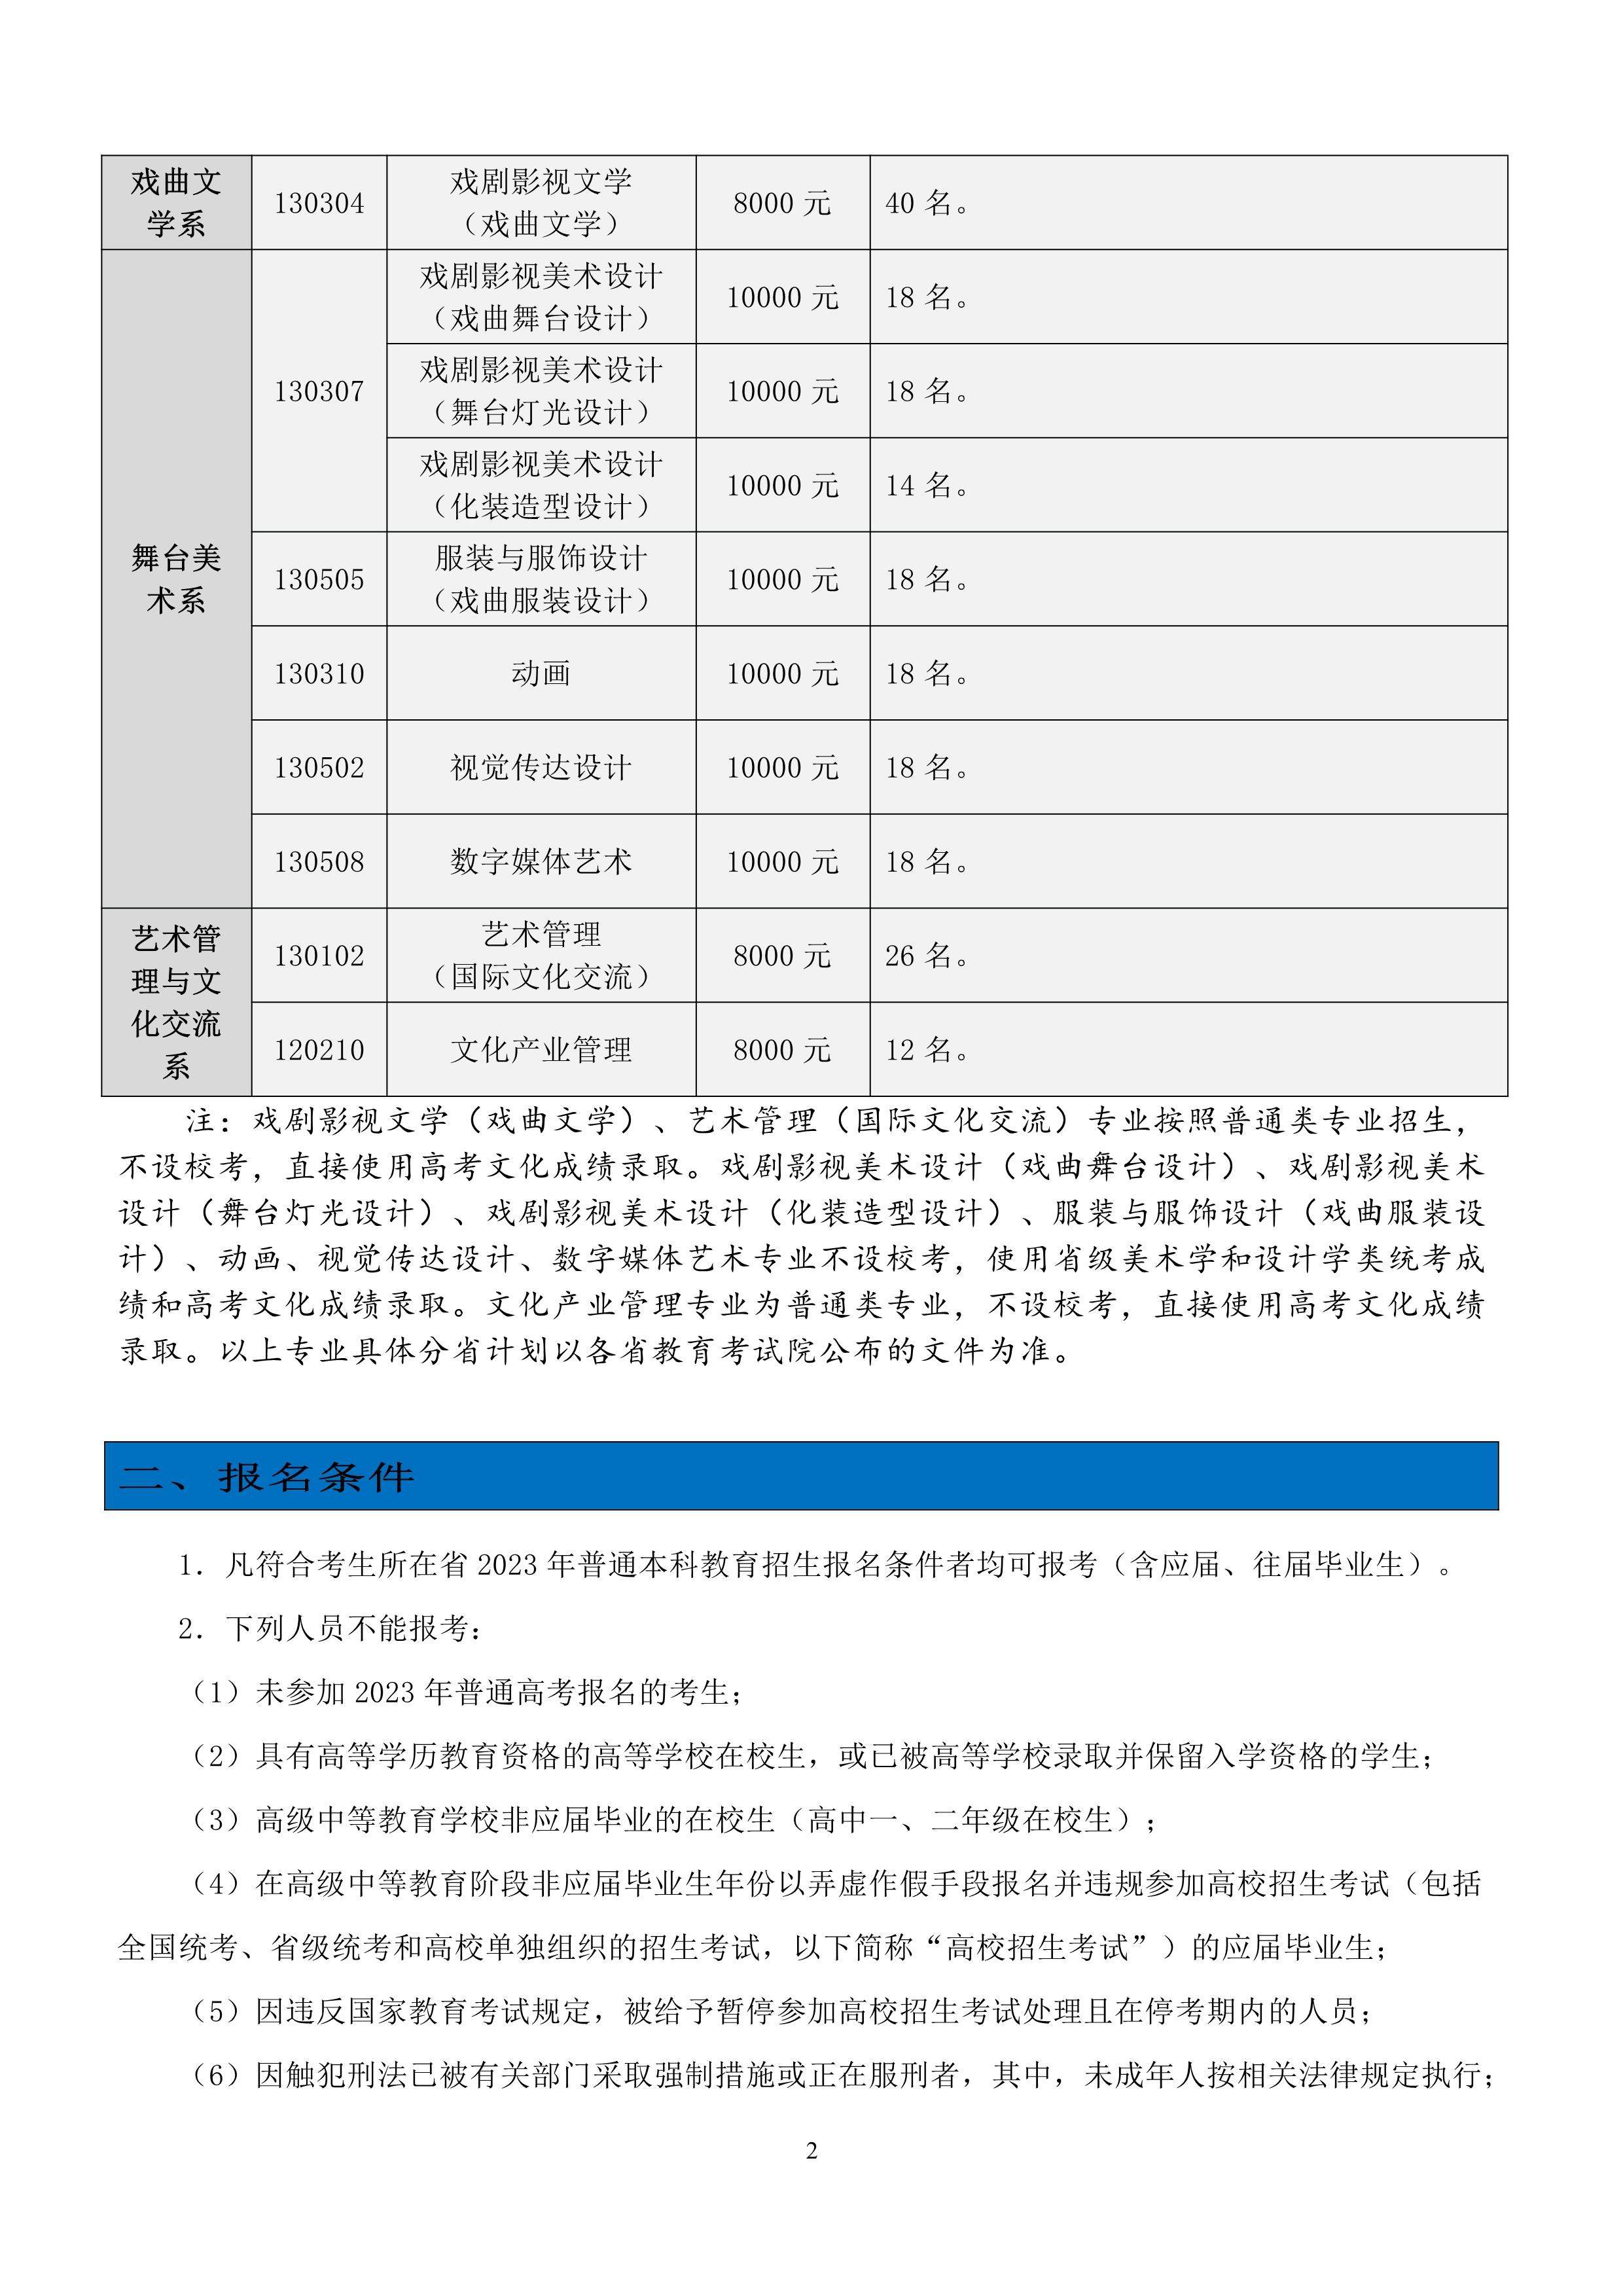 中国戏曲学院2023年本科招生简章_2.jpg